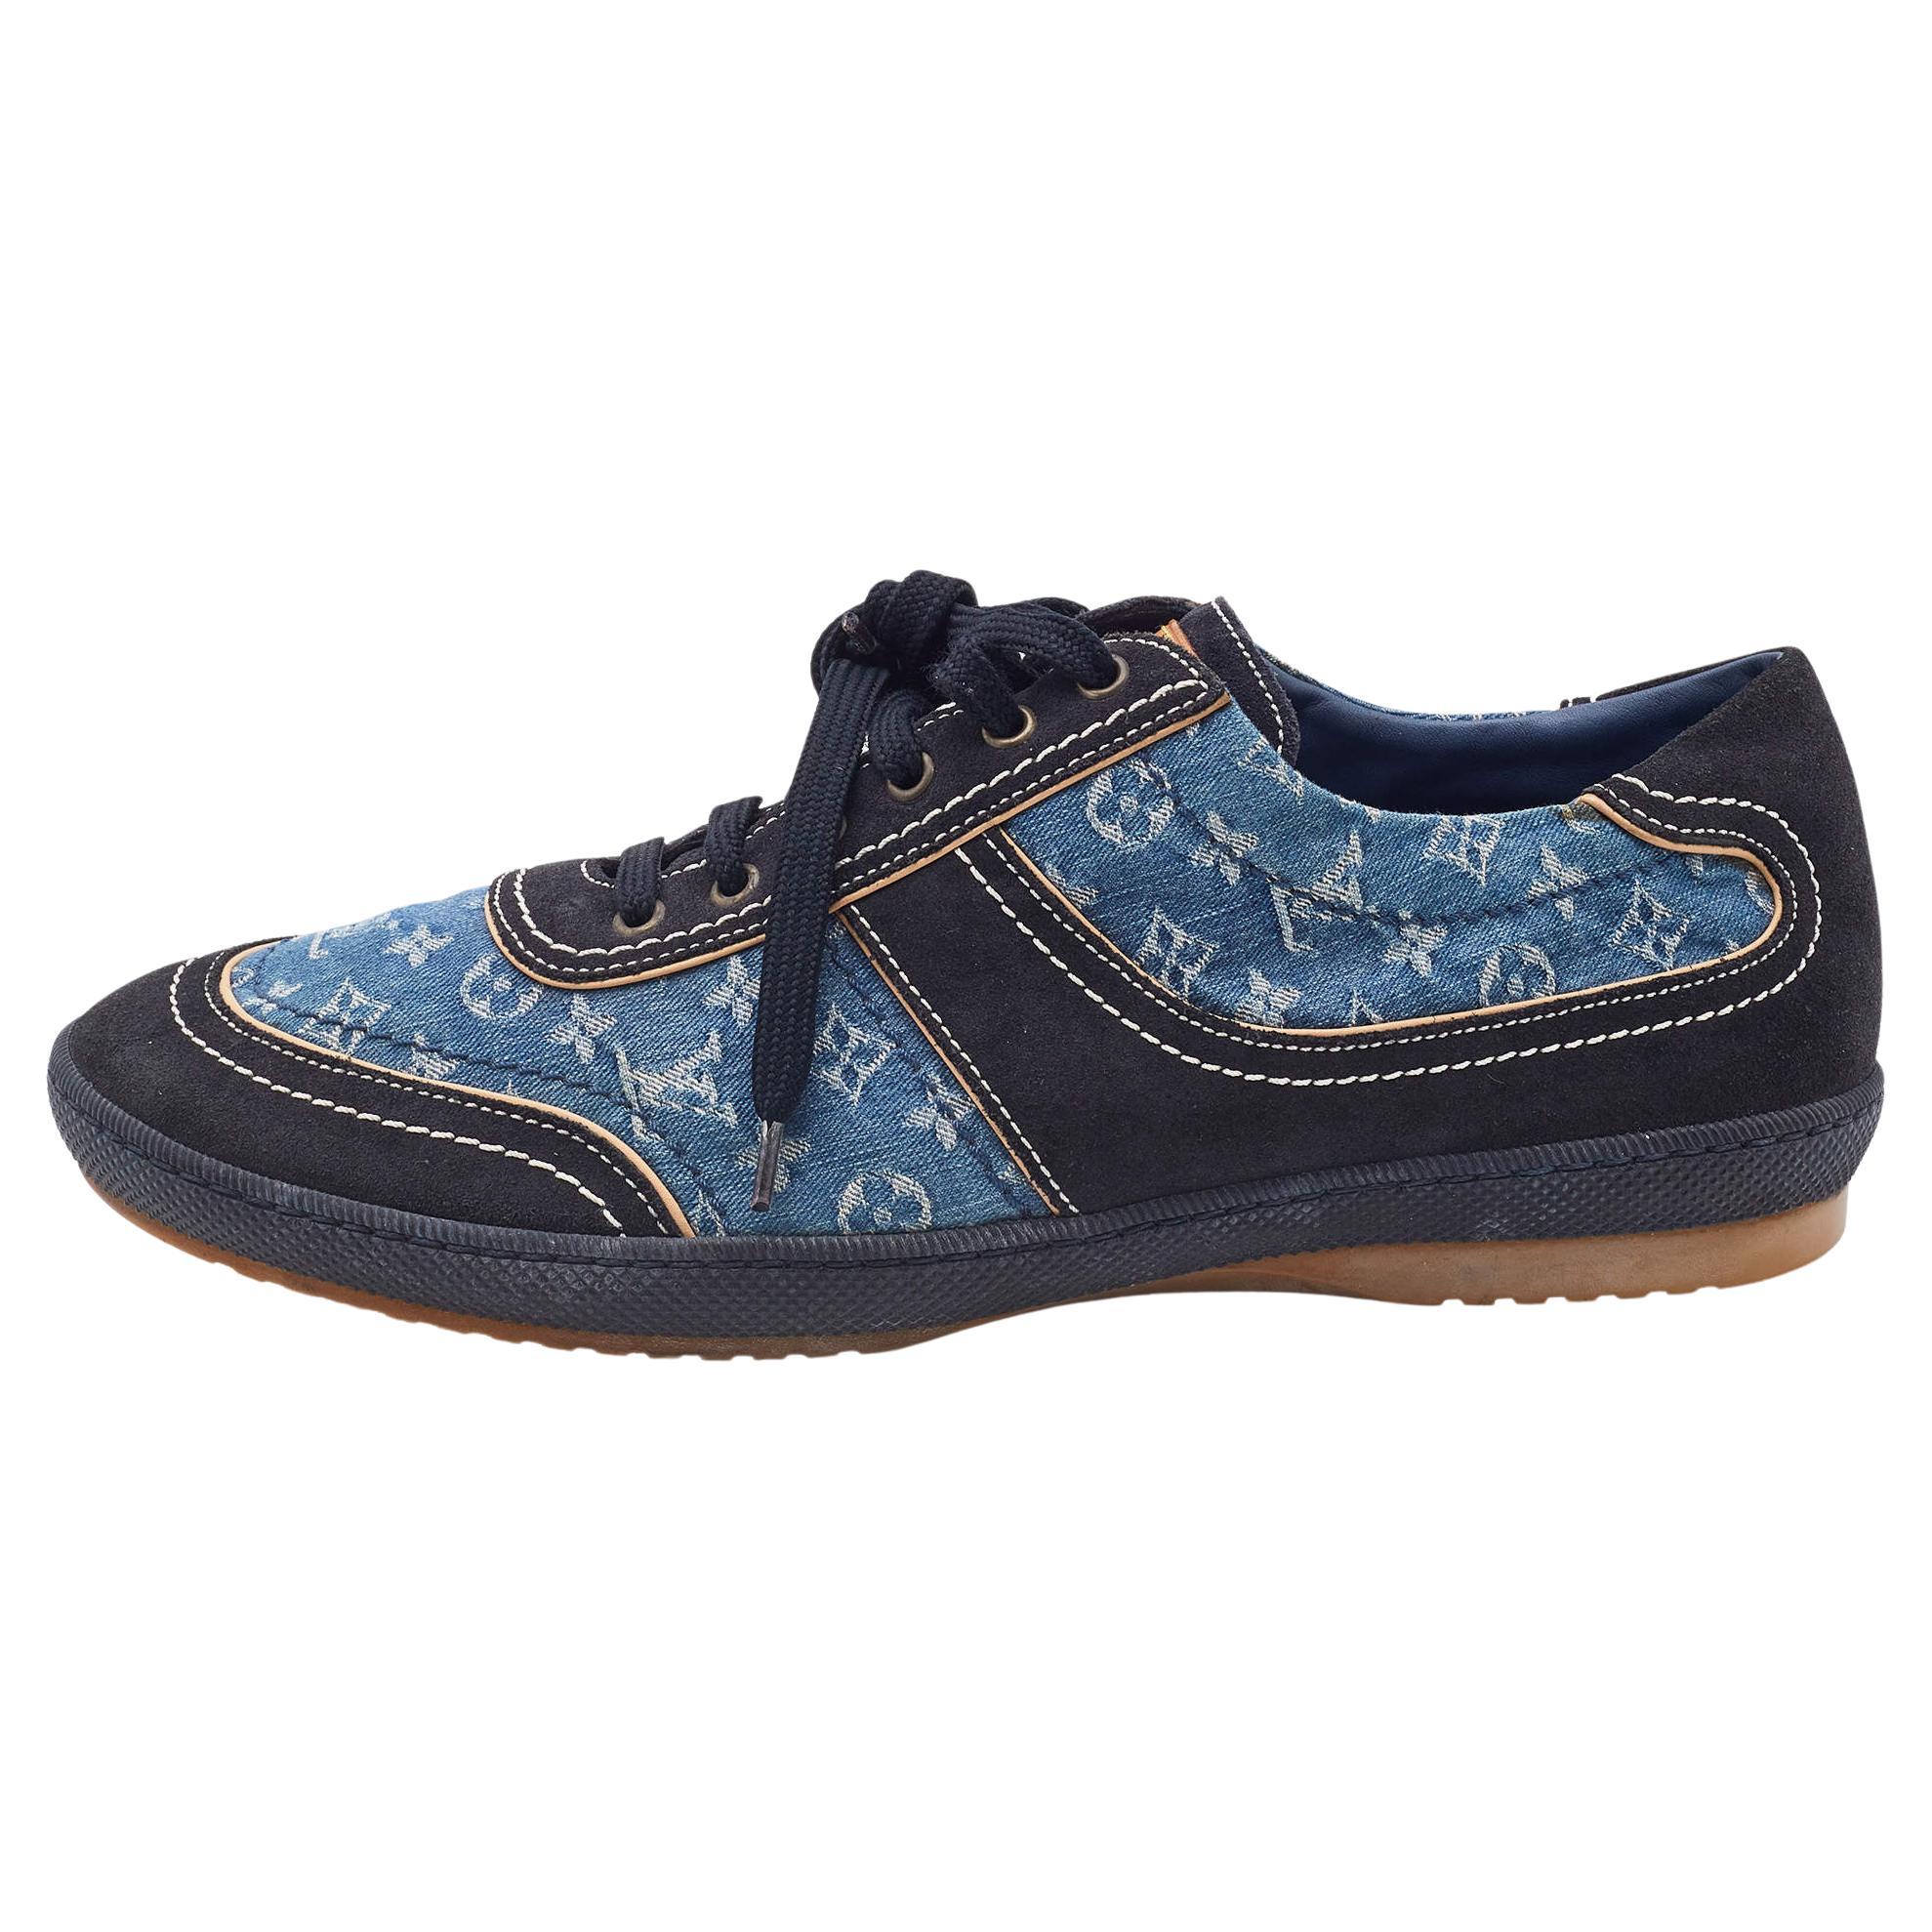 LOUIS VUITTON 1A5YUN/LD0210 Monogram Denim Sneakers Shoes 5 Blue Auth Men  Used